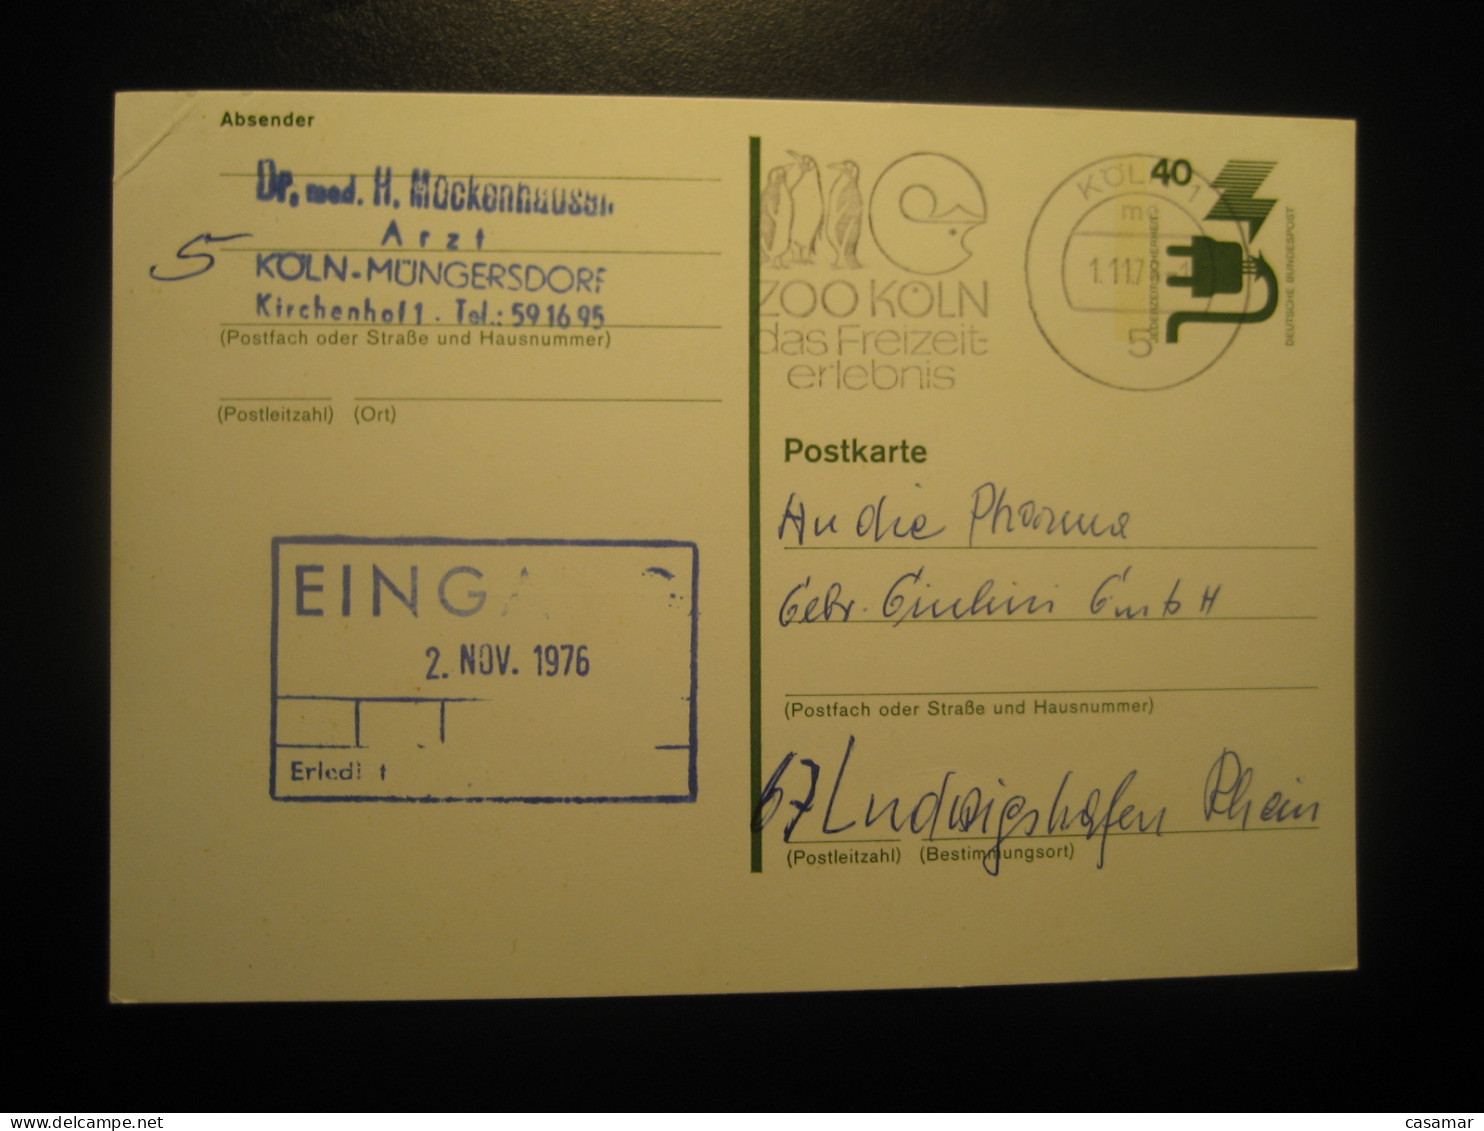 KOLN 1978 To Ludwigshafen Zoo Penguin Penguins Cancel Card GERMANY Antarctic Antarctics Antarctica Pole Polar - Fauna Antártica